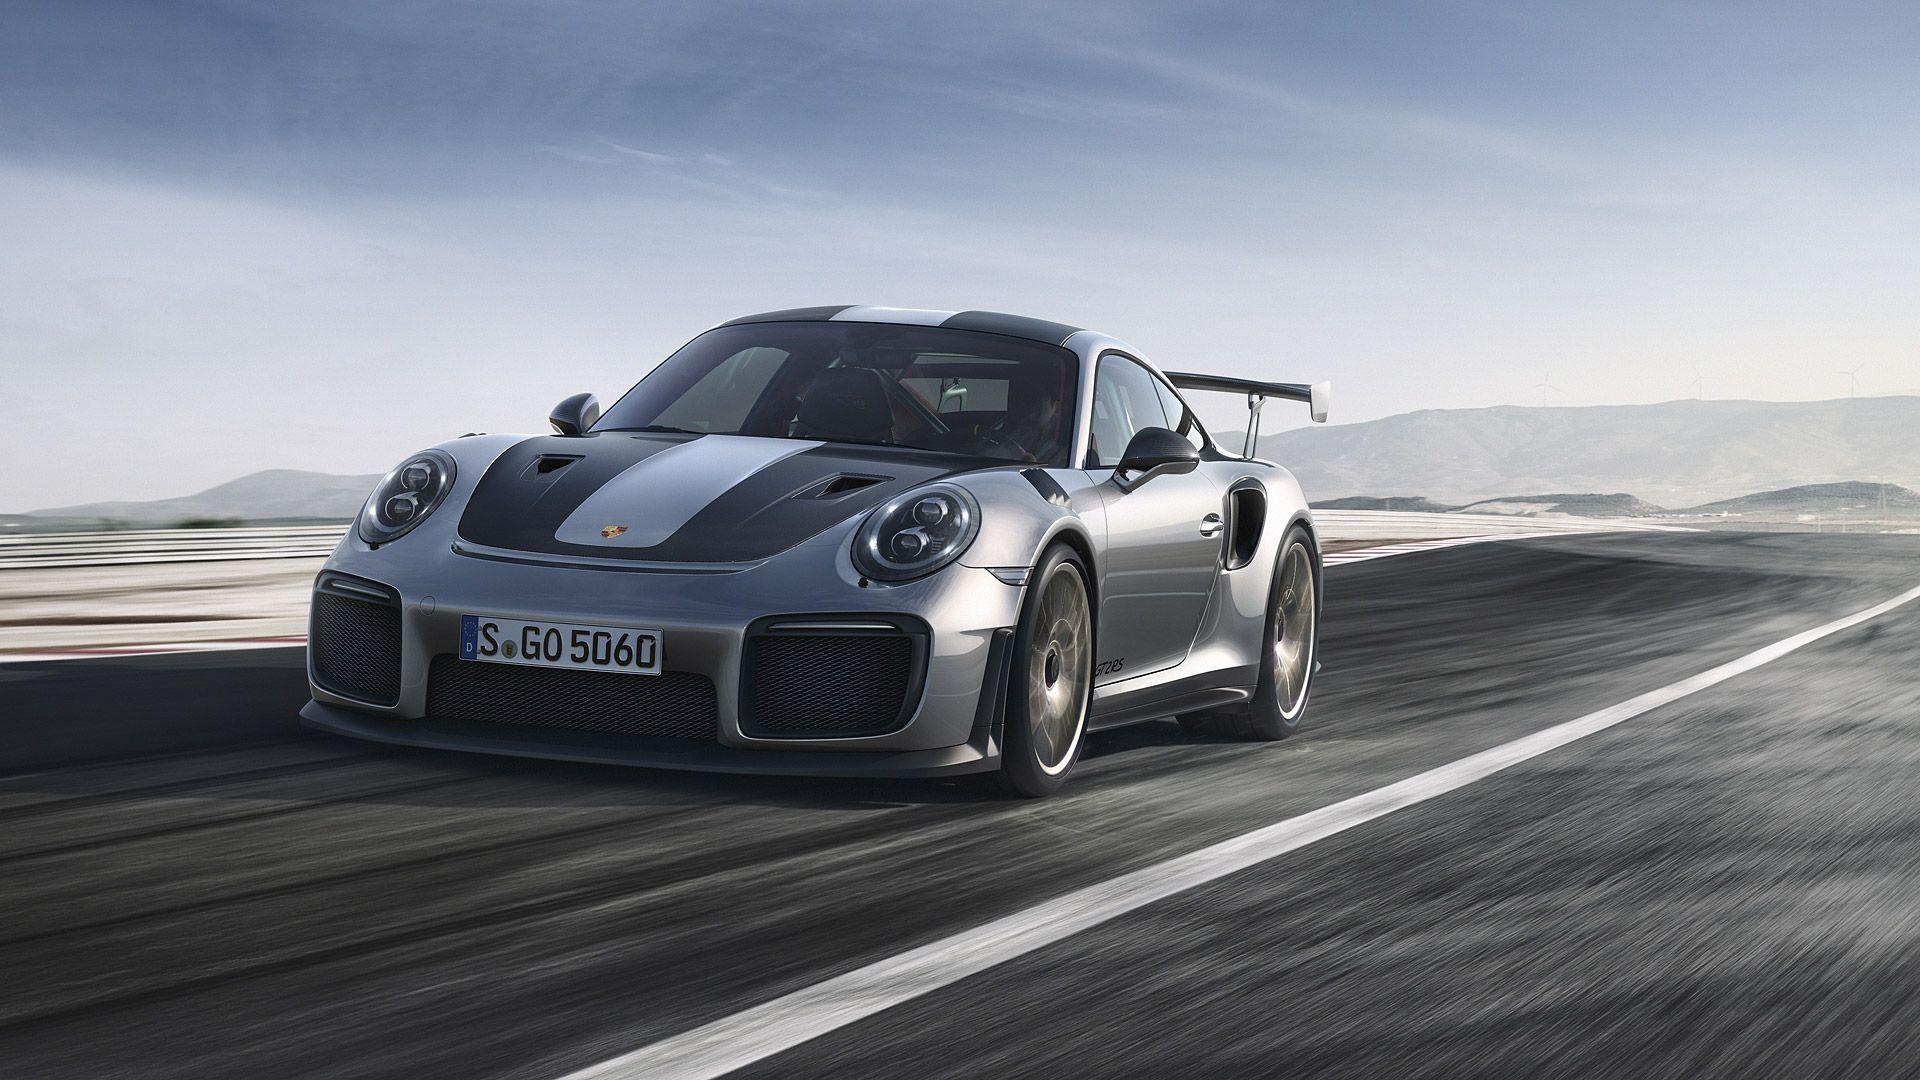 Porsche Gt2 Rs Wallpapers Top Free Porsche Gt2 Rs Backgrounds Wallpaperaccess